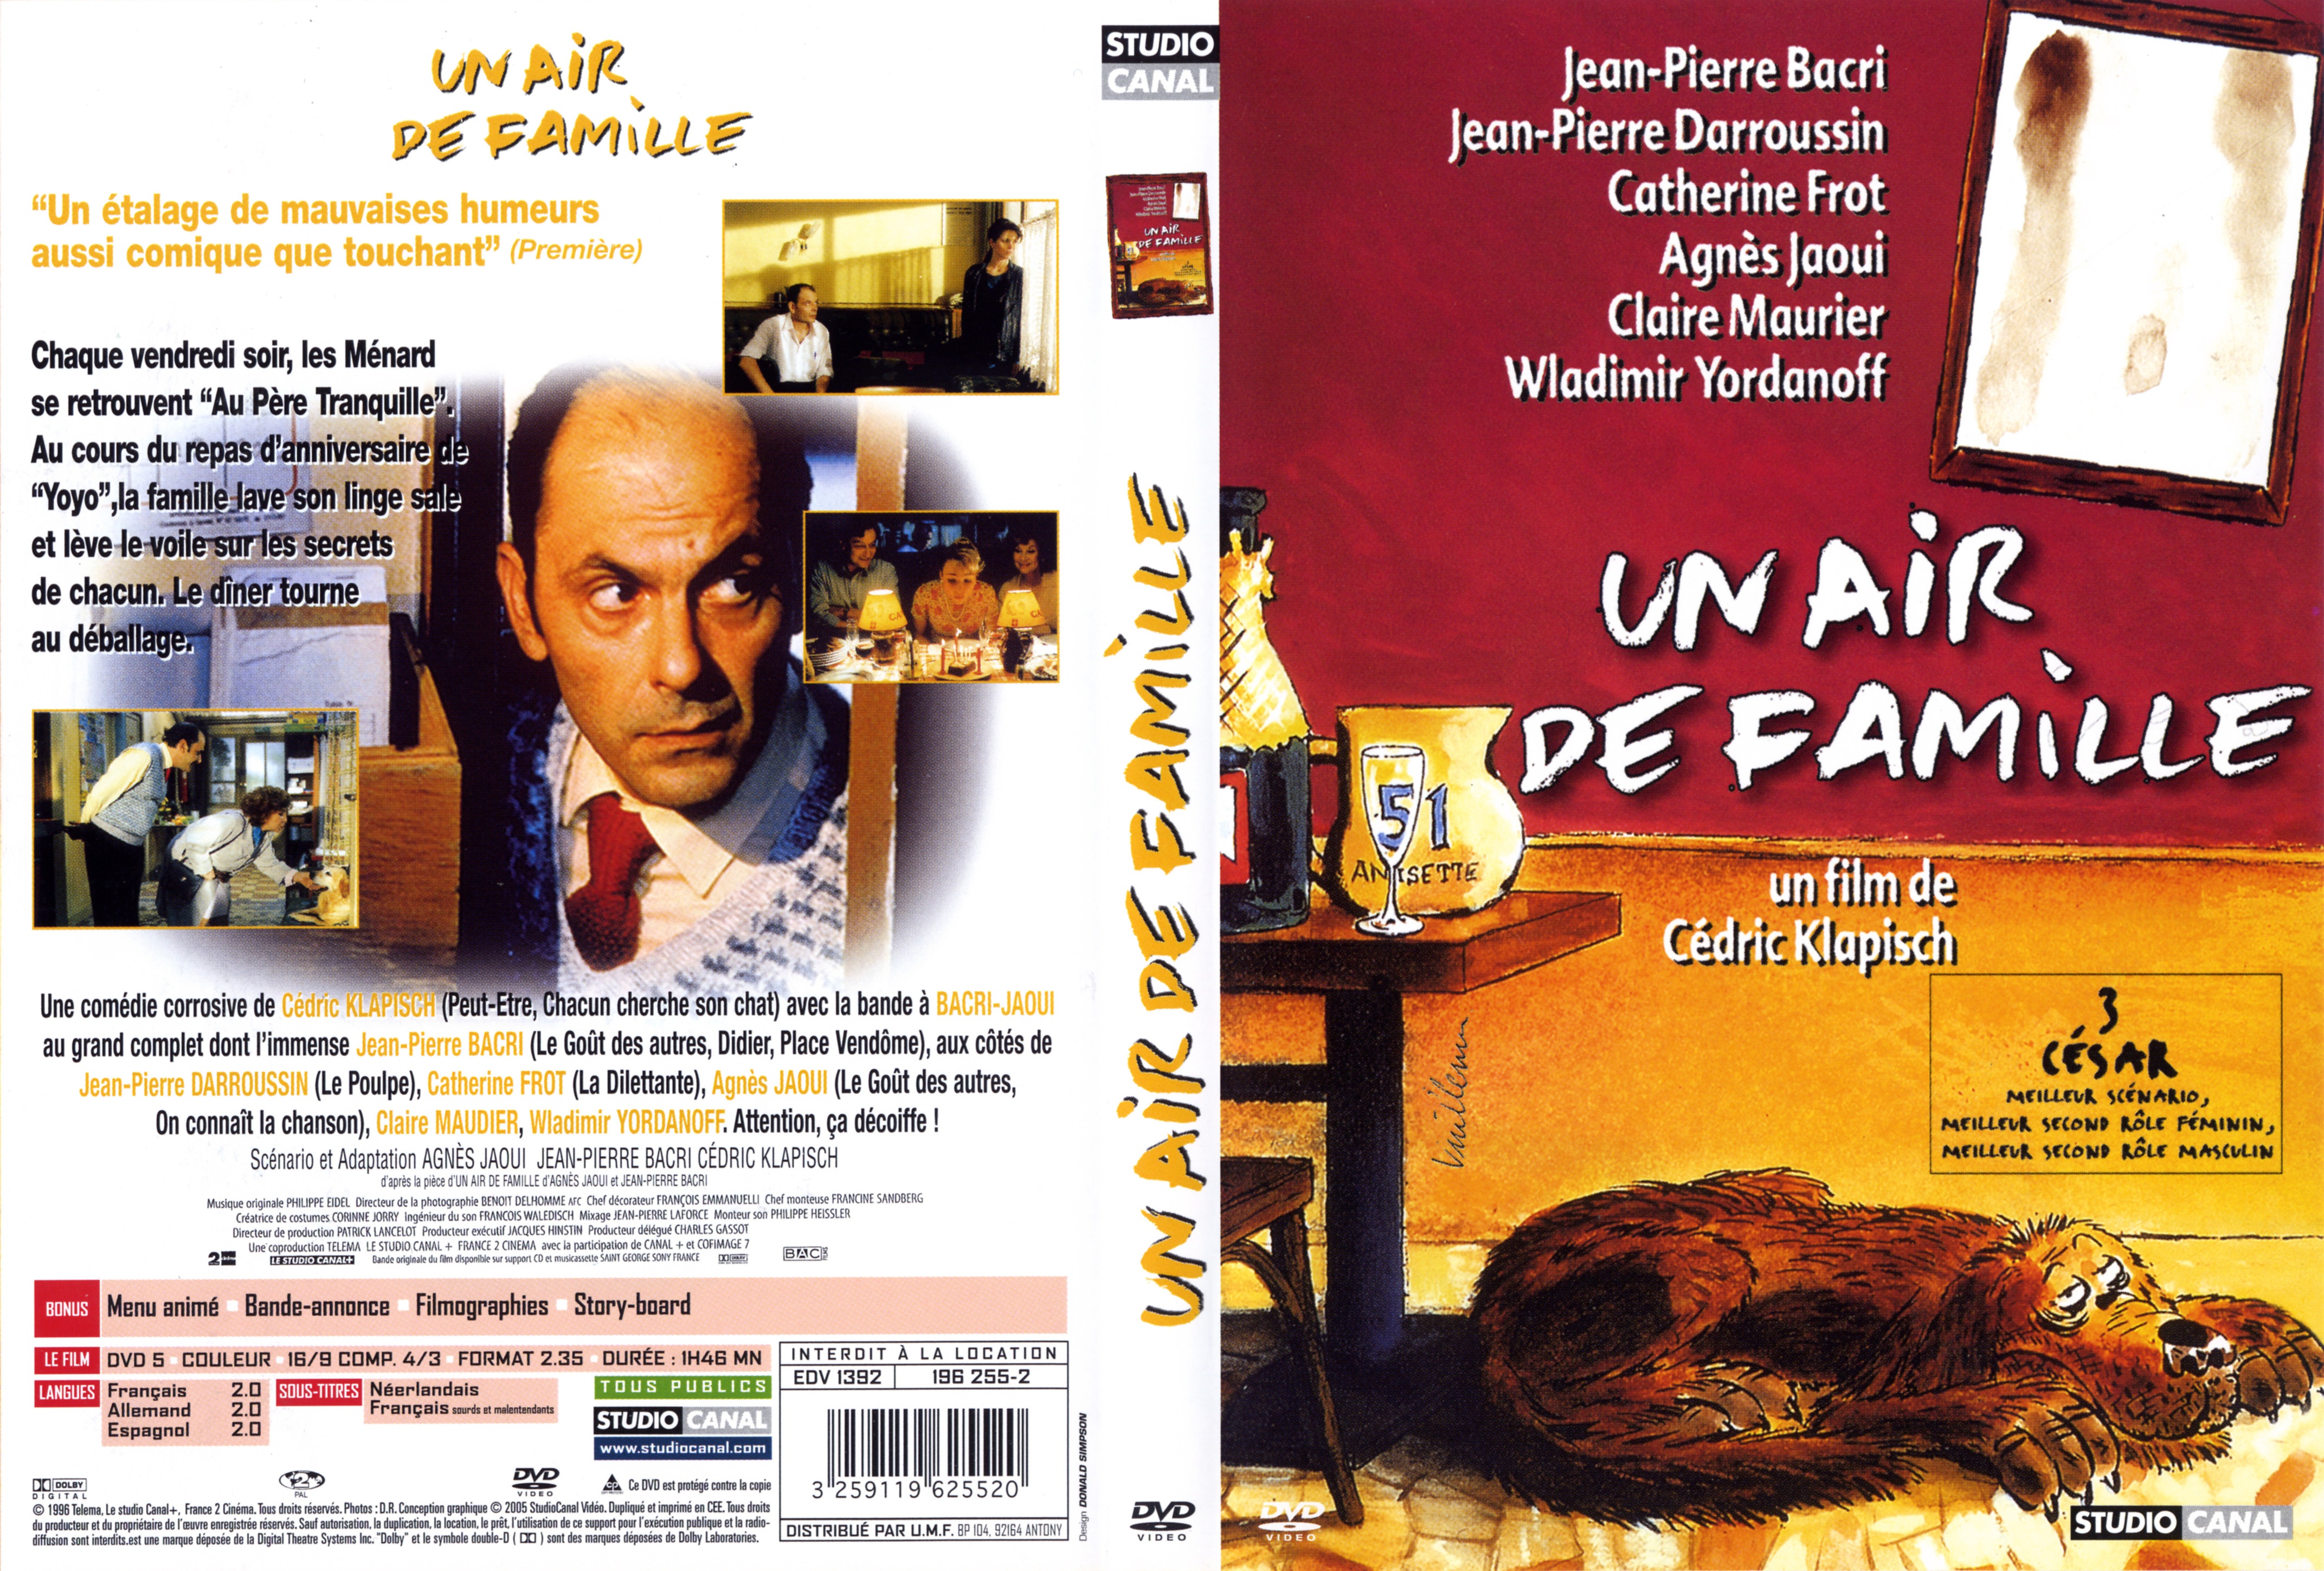 Jaquette DVD Un air de famille v2